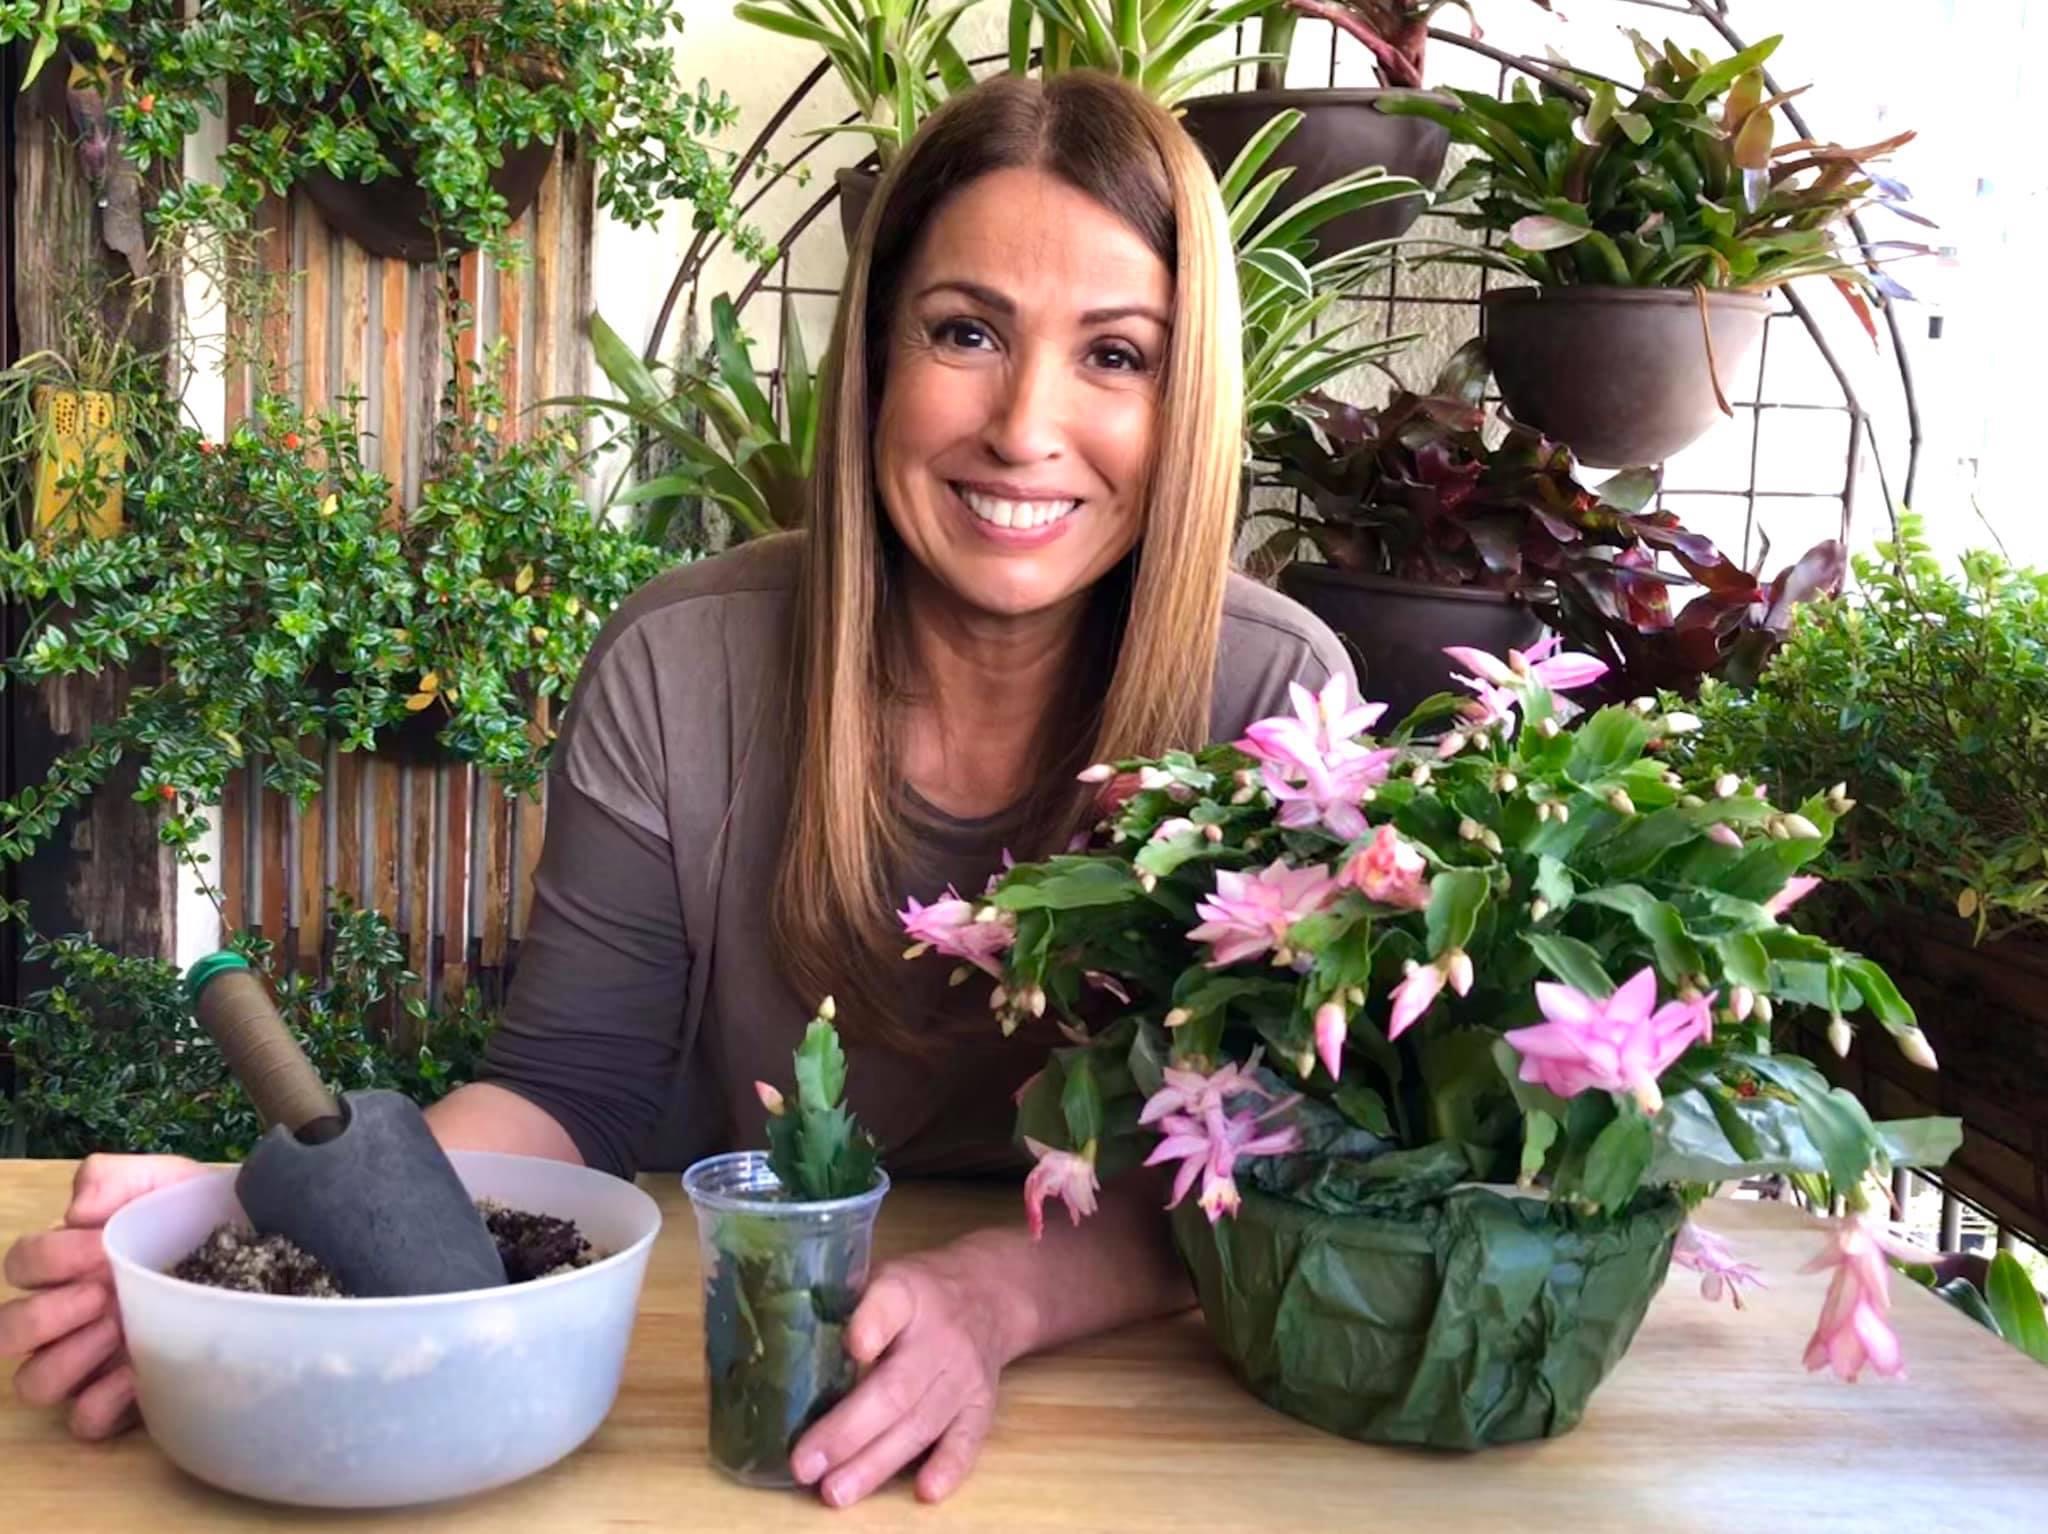 ANANDA APPLE · A jornalista apaixonada por plantas 